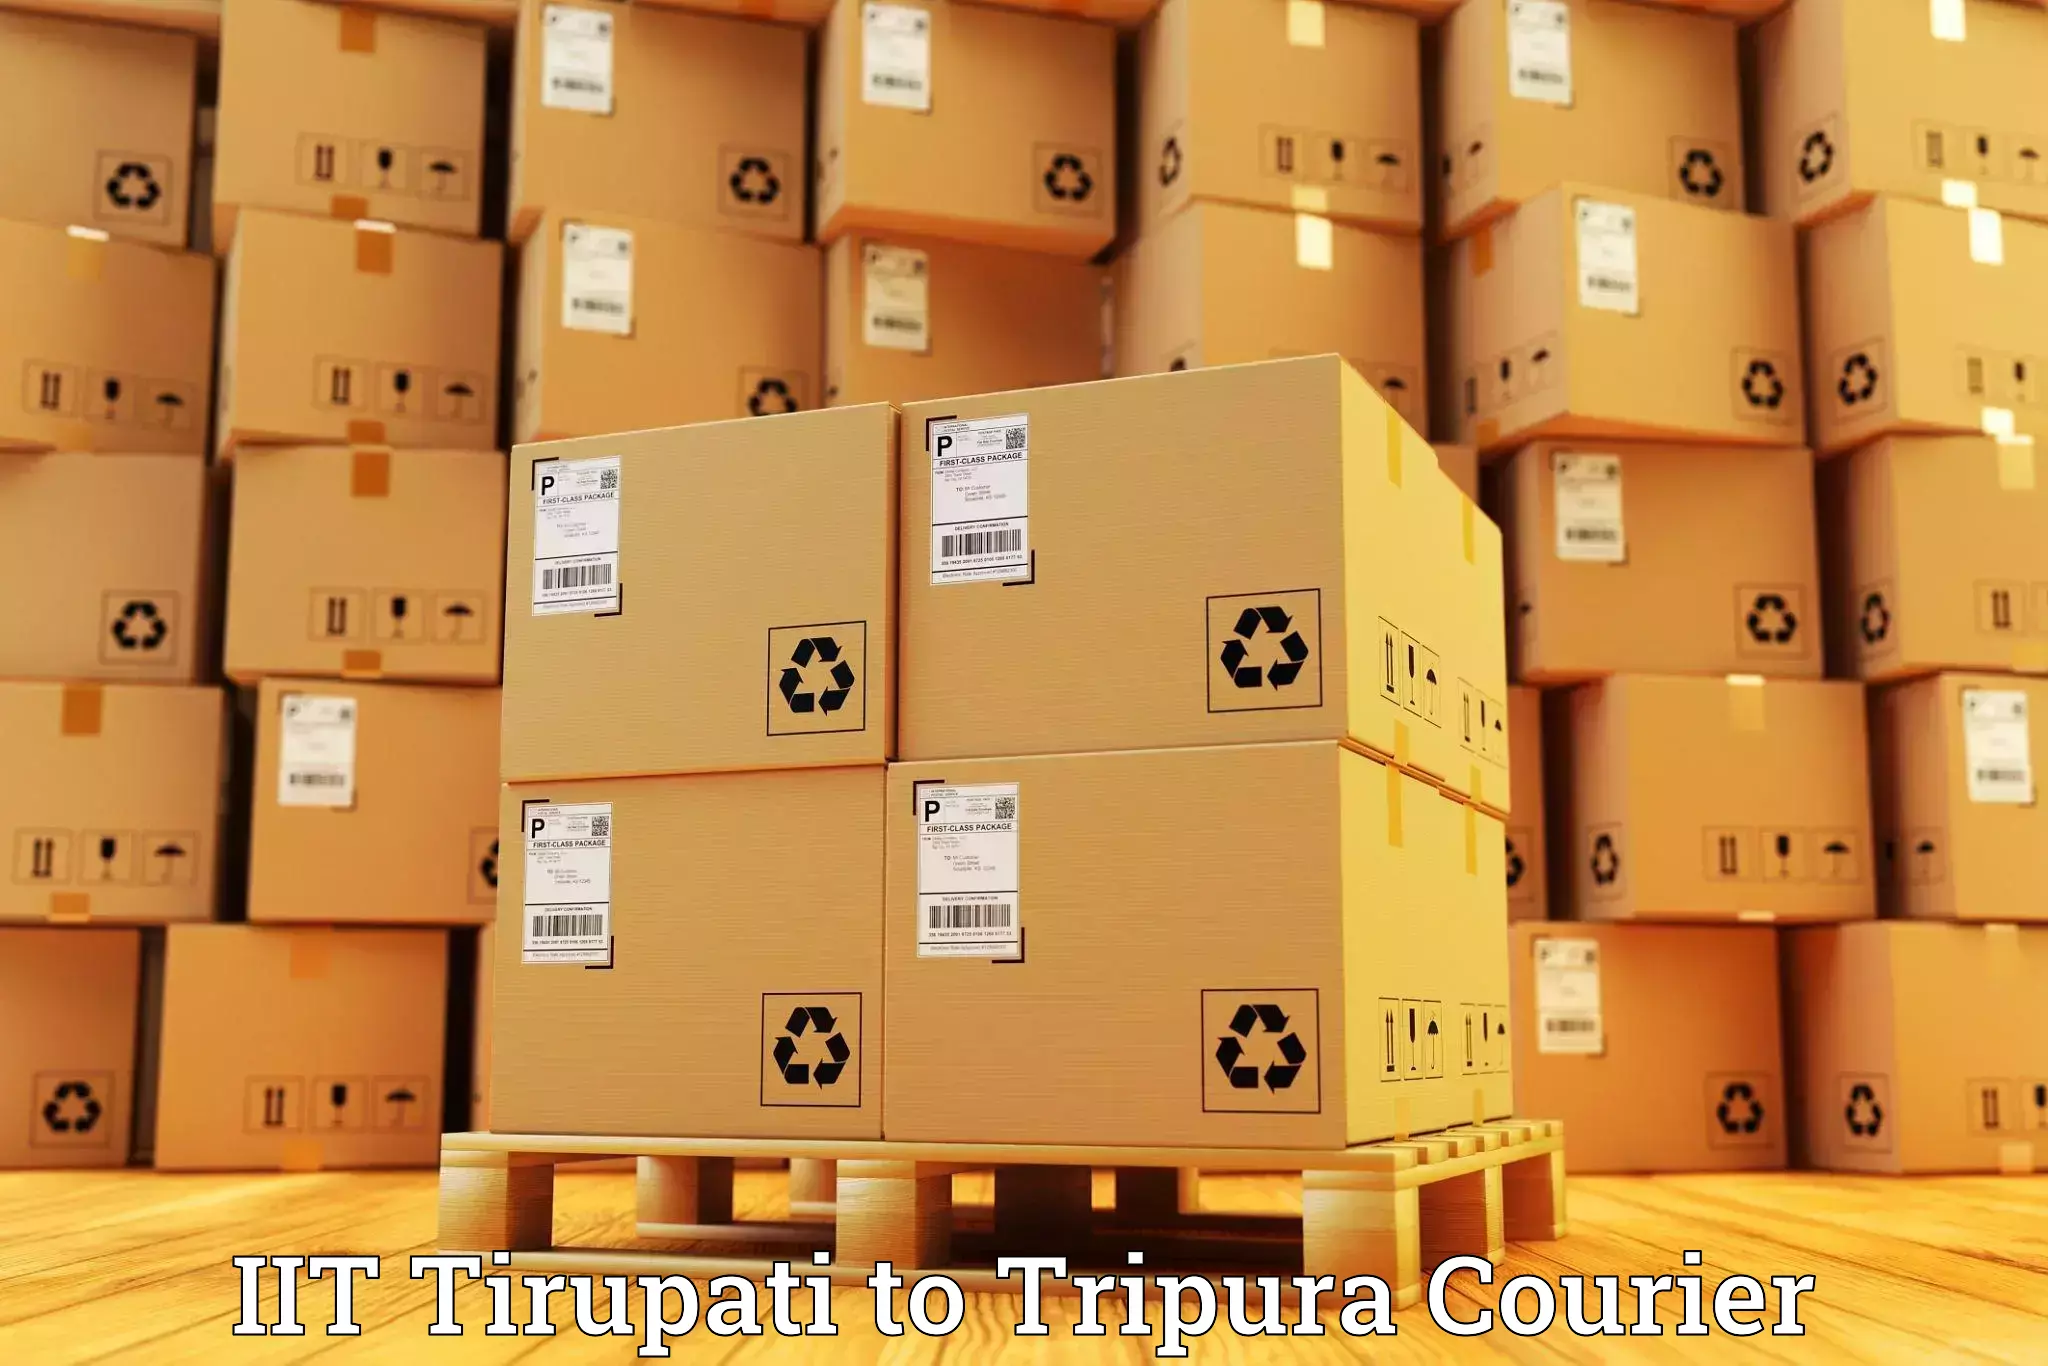 Local delivery service IIT Tirupati to Sonamura